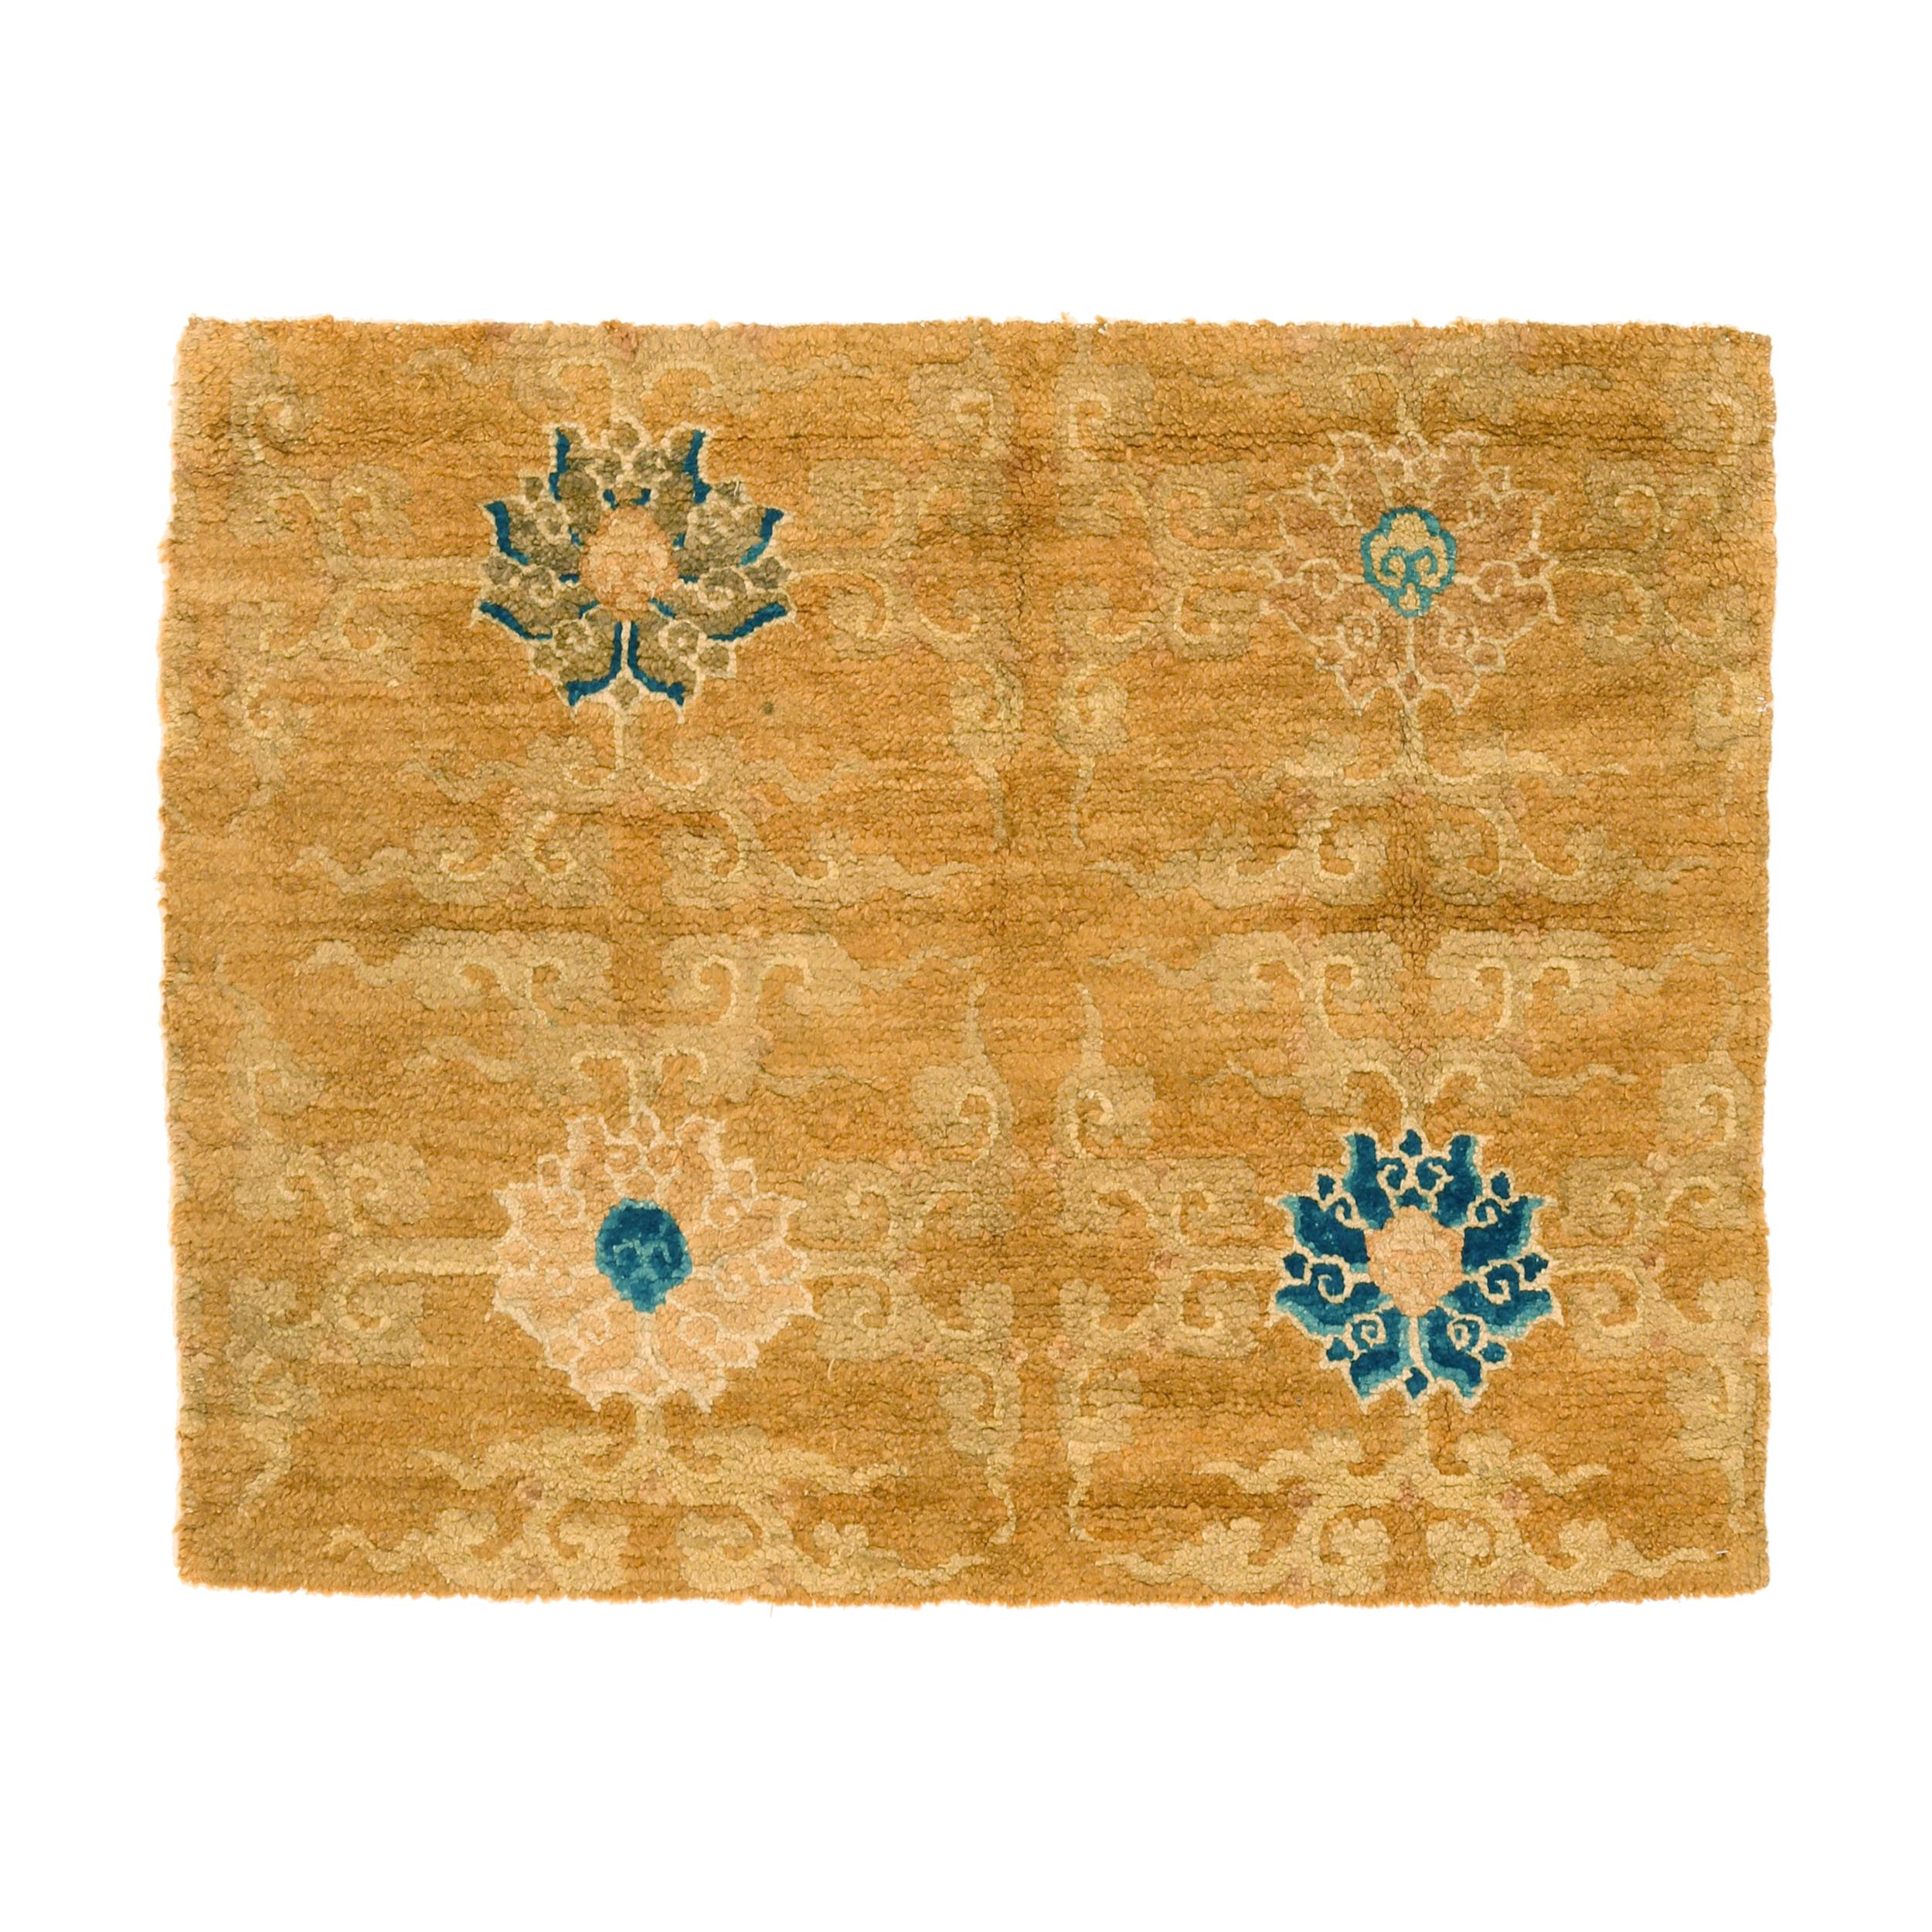 Fragment des antiken chinesischen Tiffany-Teppichs mit Lotusblumen